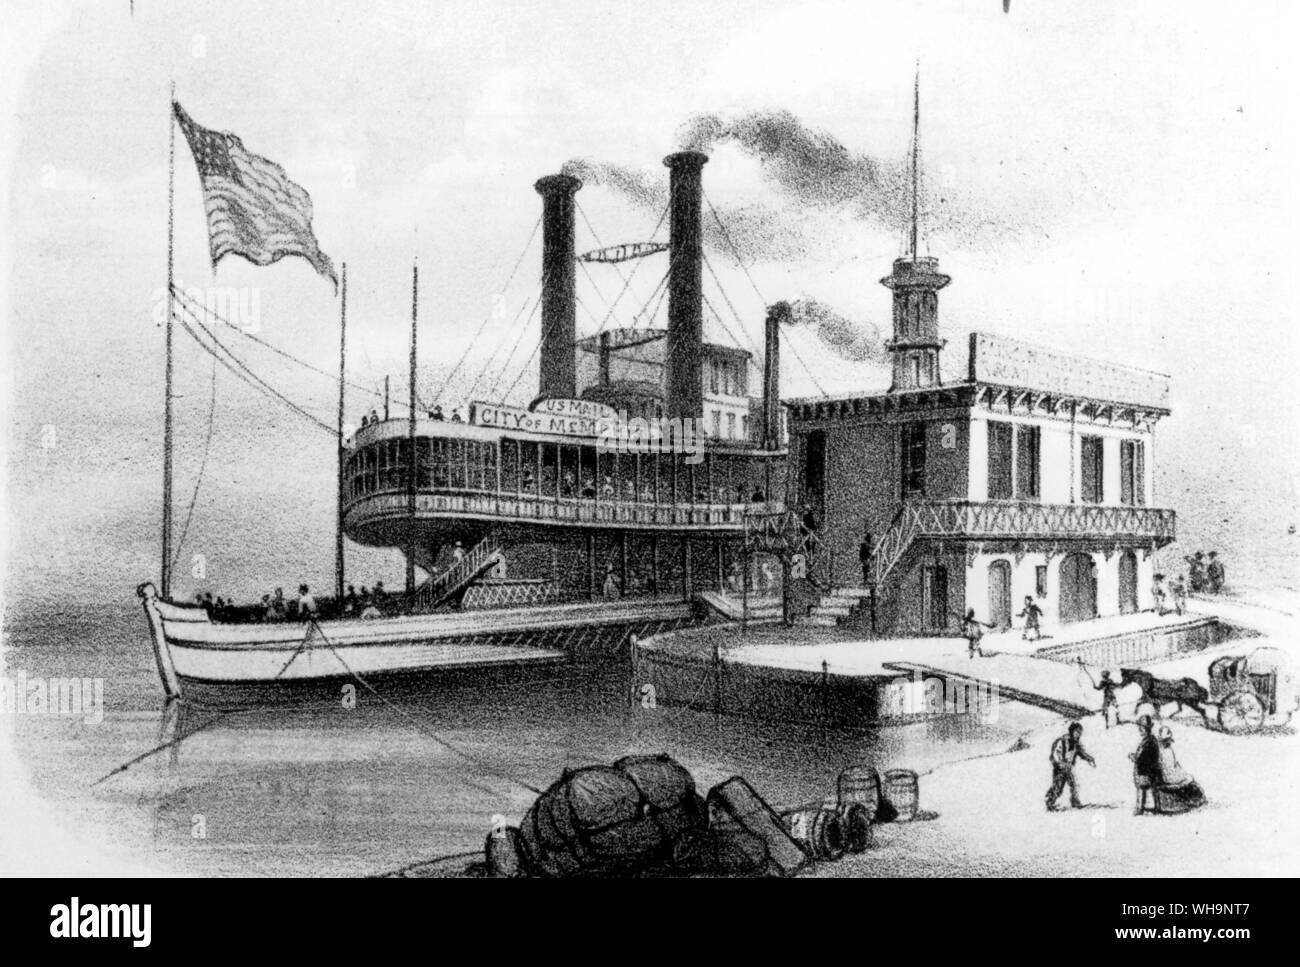 'La ville de Memphis est le plus grand bateau dans le commerce... Je peux obtenir une réputation sur elle." Lettre à Orion, 1859 - photo de la biographie de Mark Twain Banque D'Images